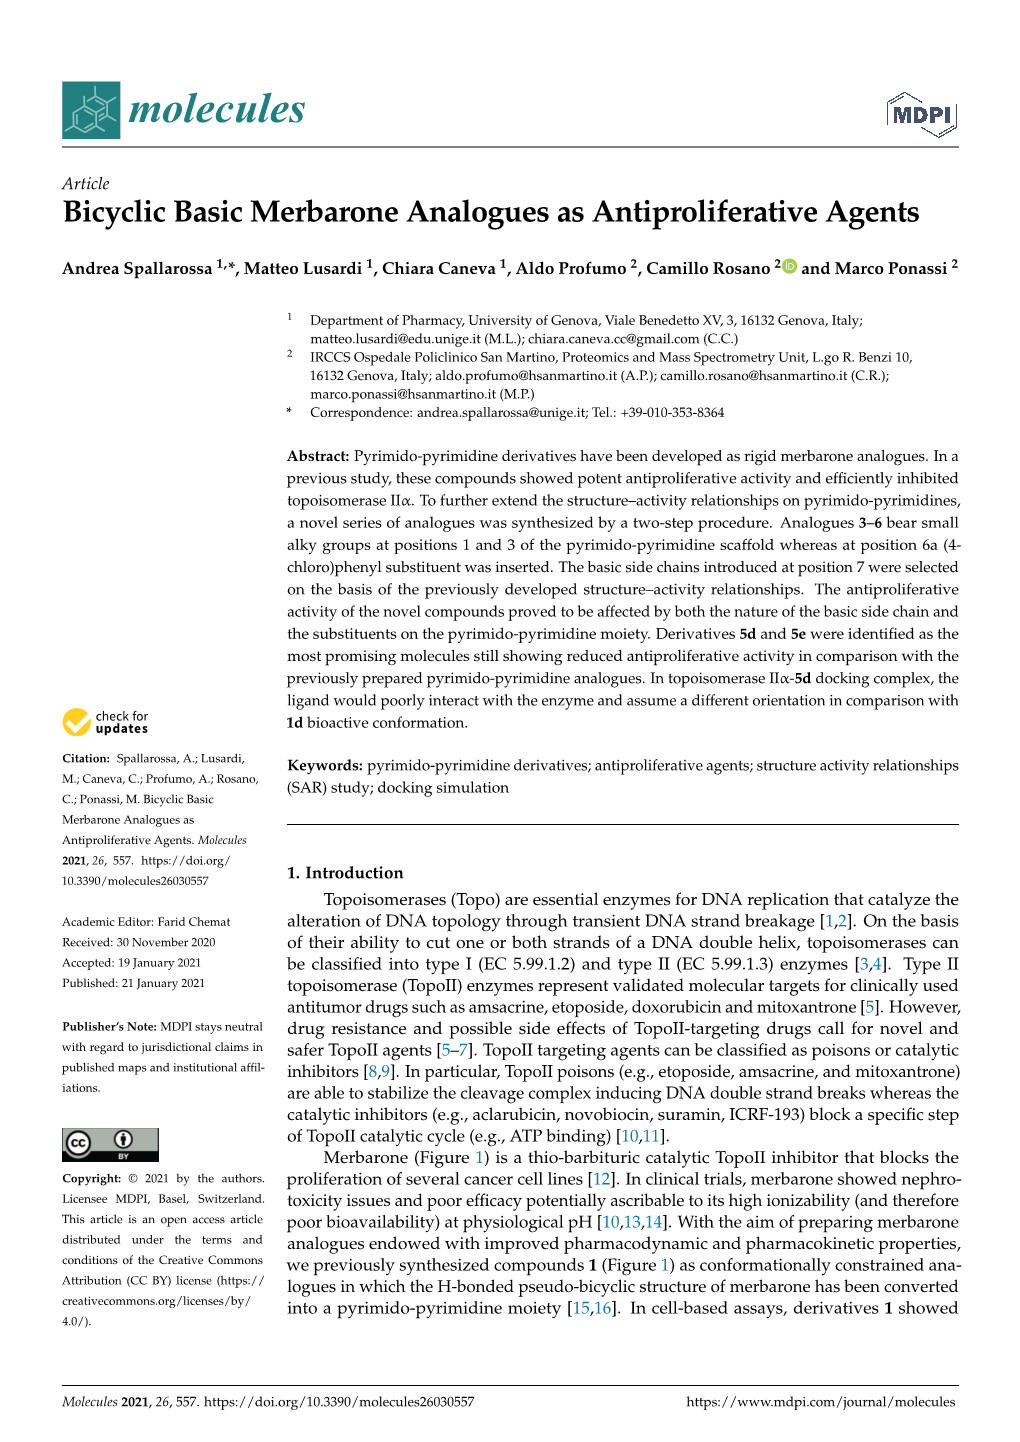 Bicyclic Basic Merbarone Analogues As Antiproliferative Agents